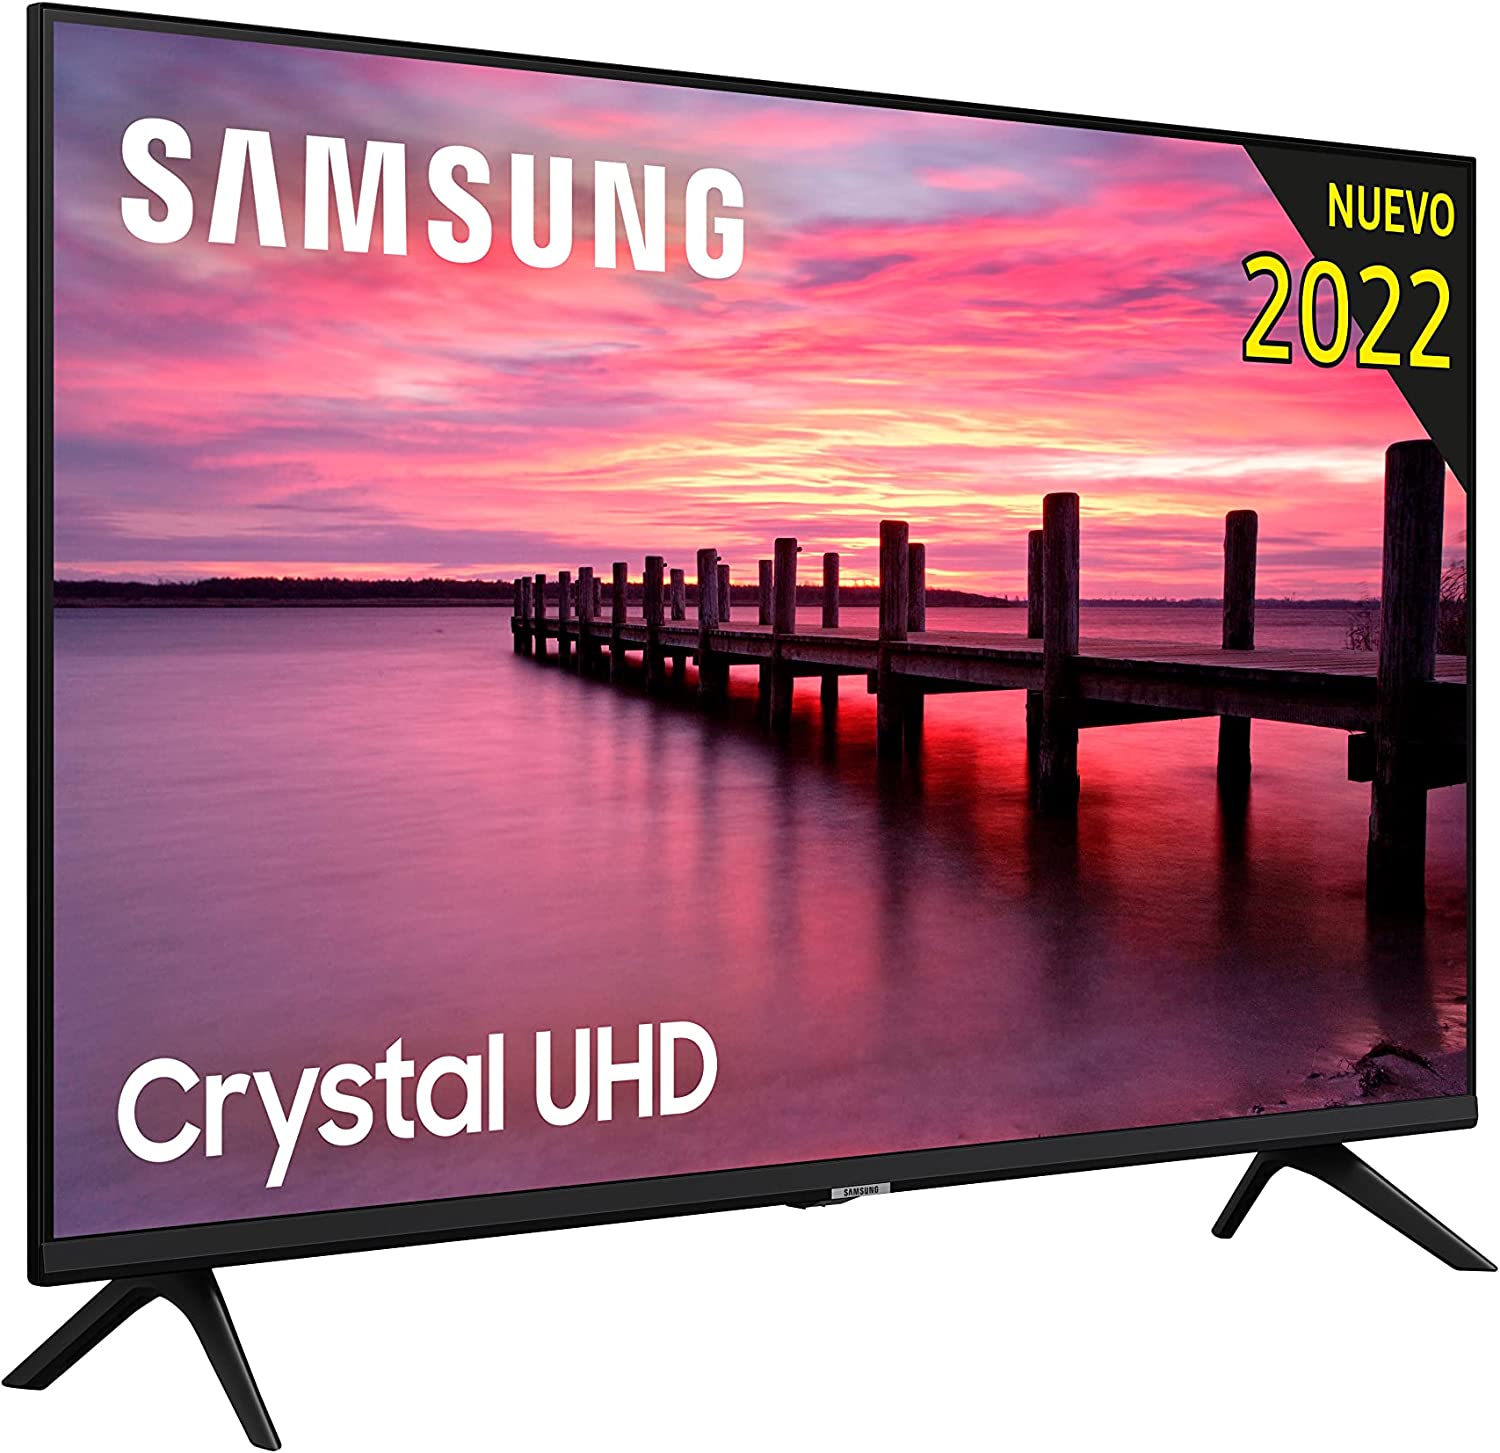 Samsung Crystal UHD 2022 50AU7095, análisis: características, especificaciones y opinión